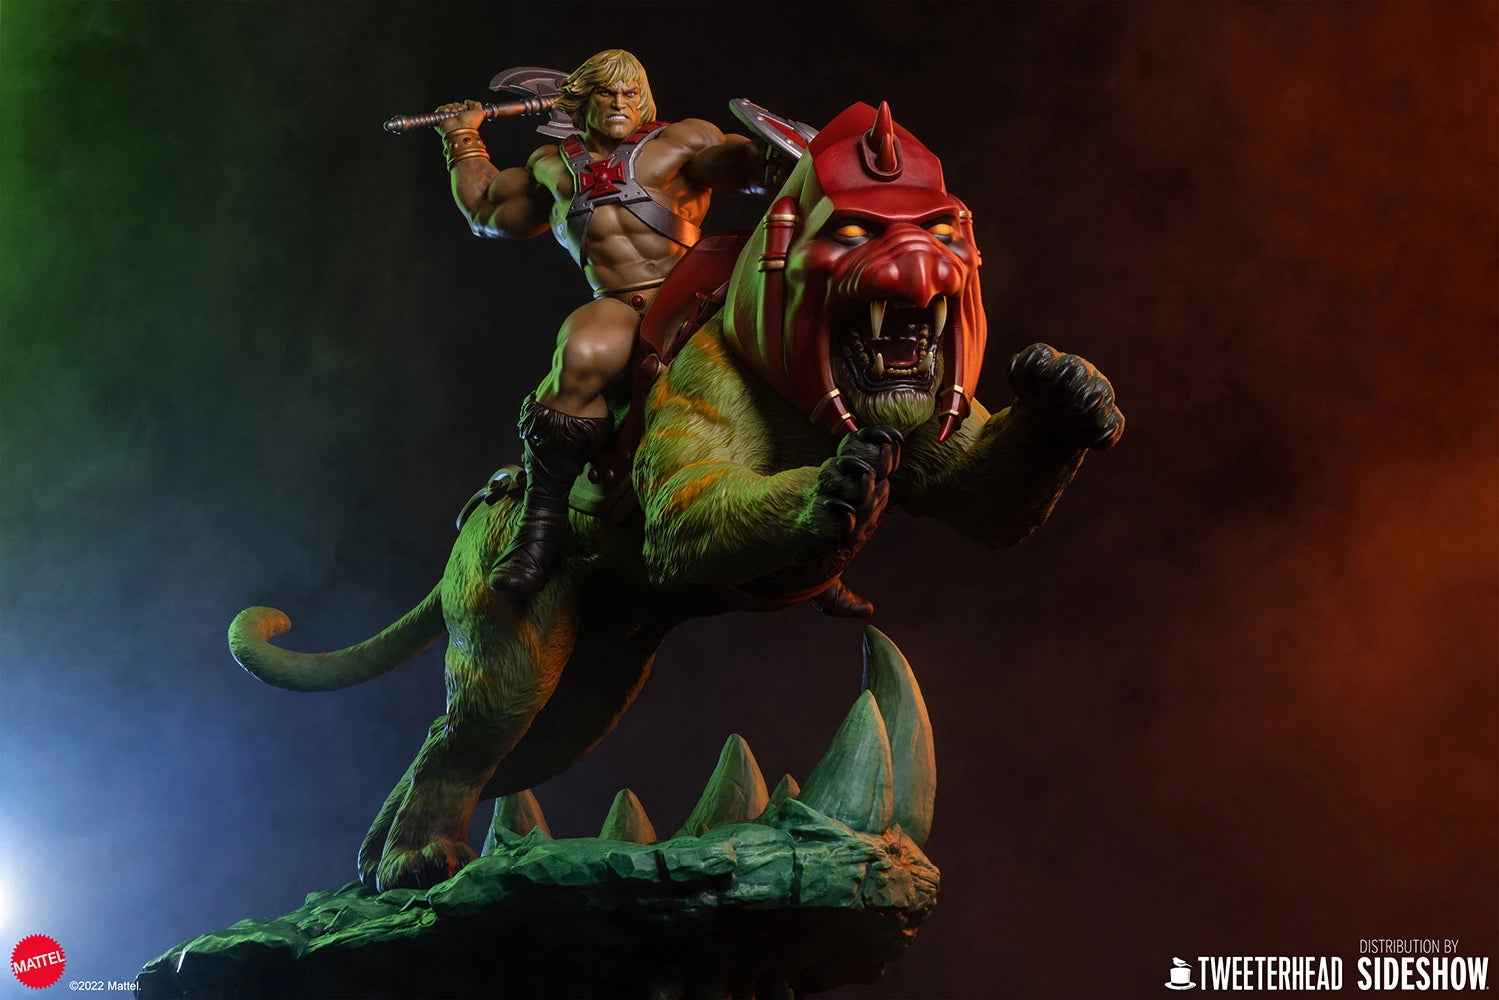 He-Man & Battlecat Classic Deluxe Statue By Tweeterhead